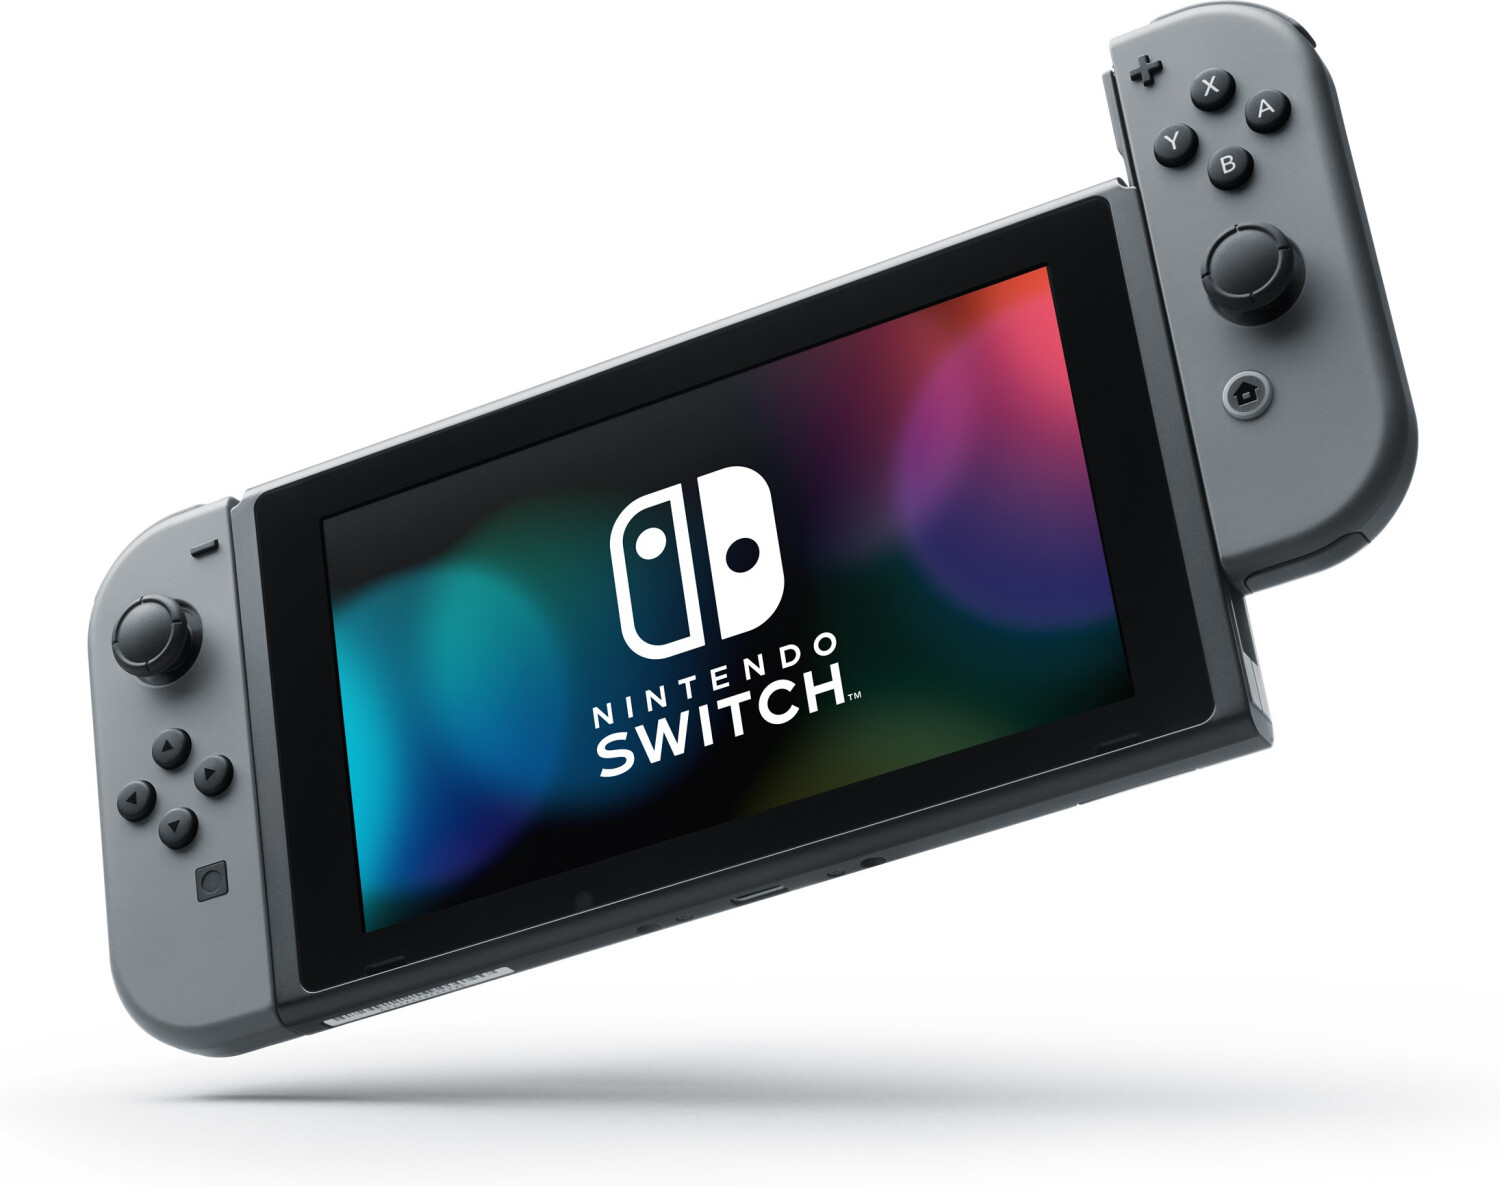 Nintendo Switch Lite Différentes couleurs Choix Console Usagé